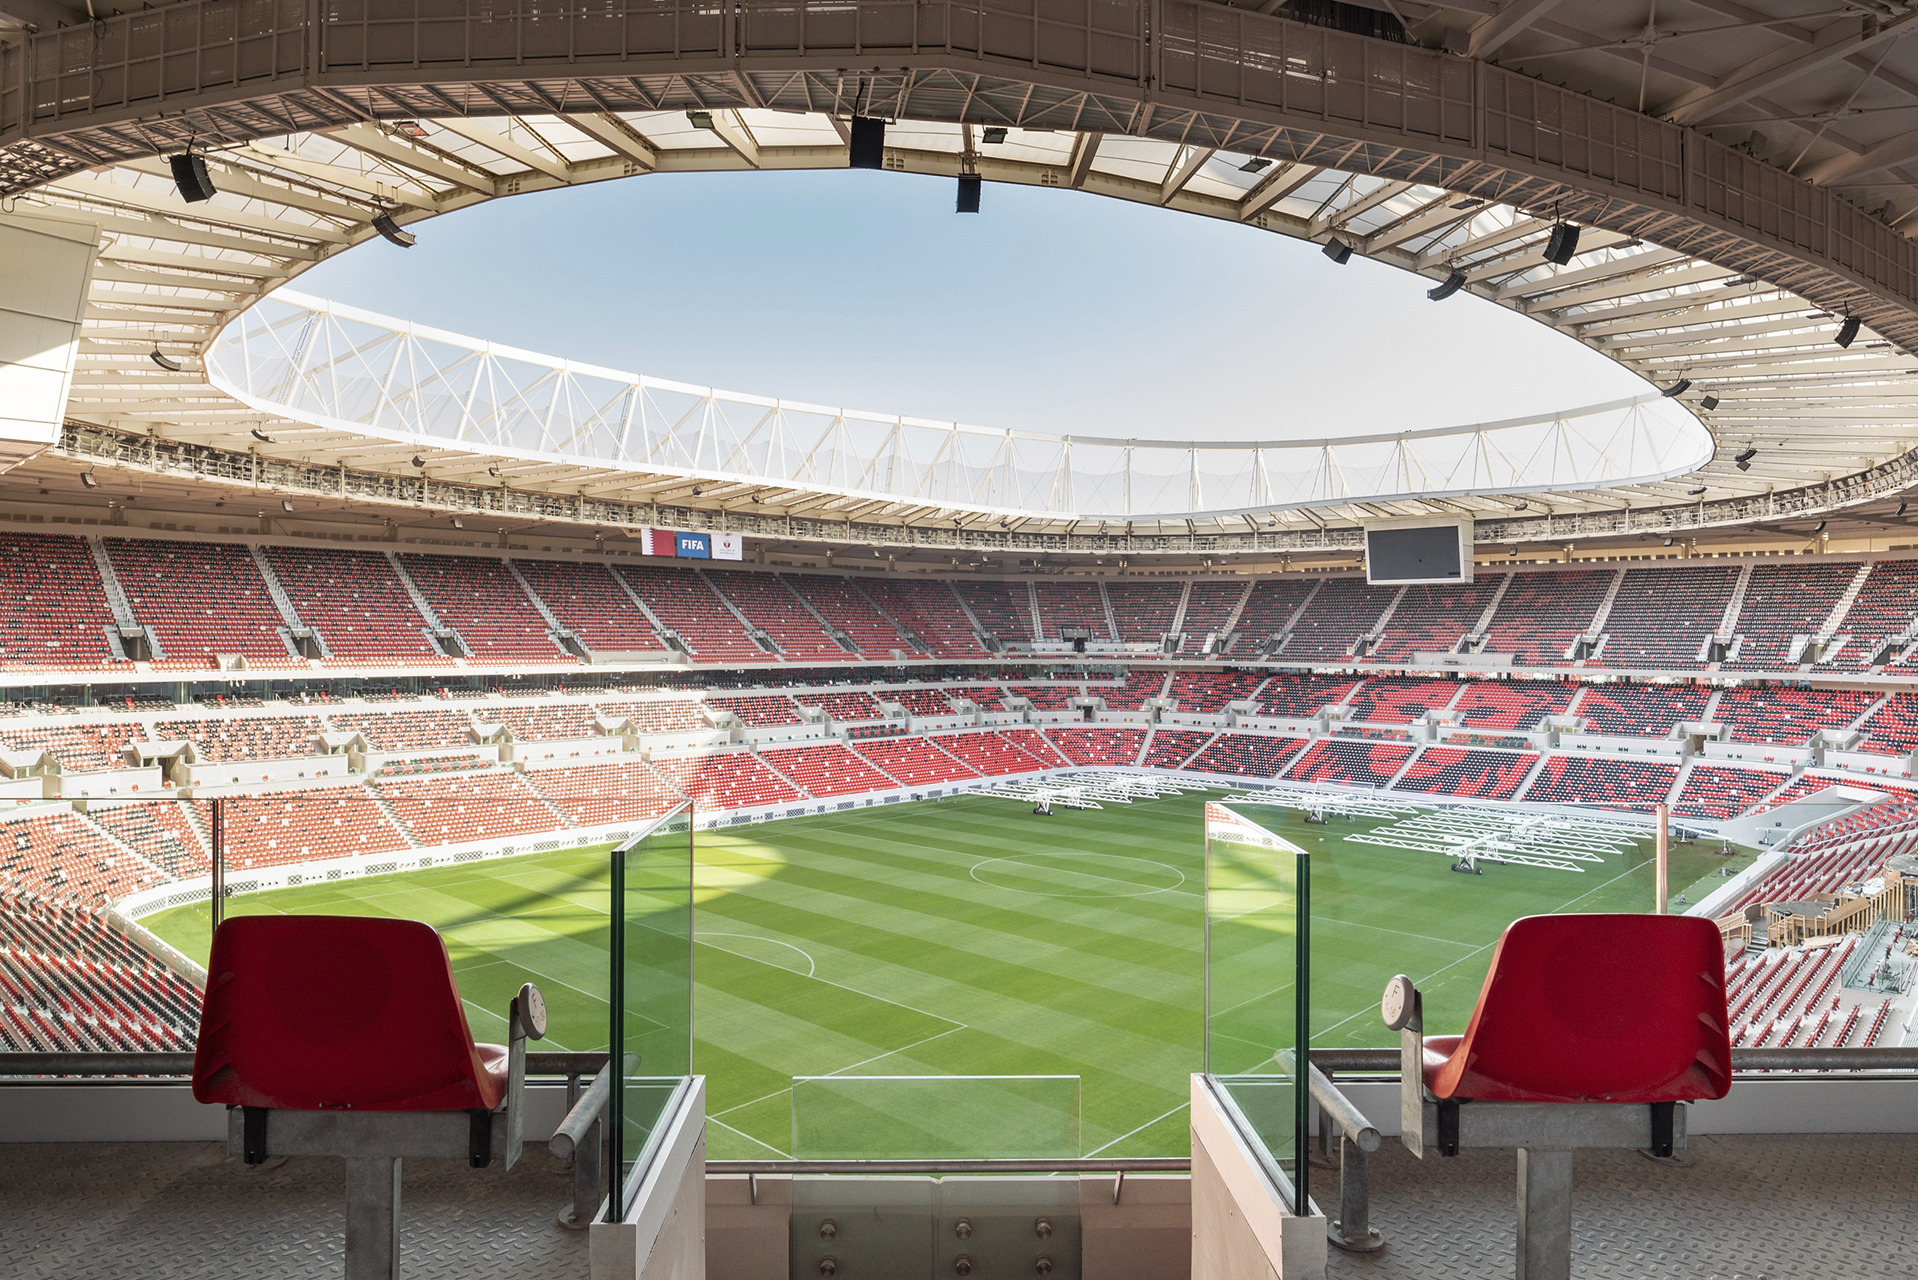 为了因应漠地气候，Ahmad Bin Ali Stadium 在看台座椅区特别设计环保通风冷却系统。